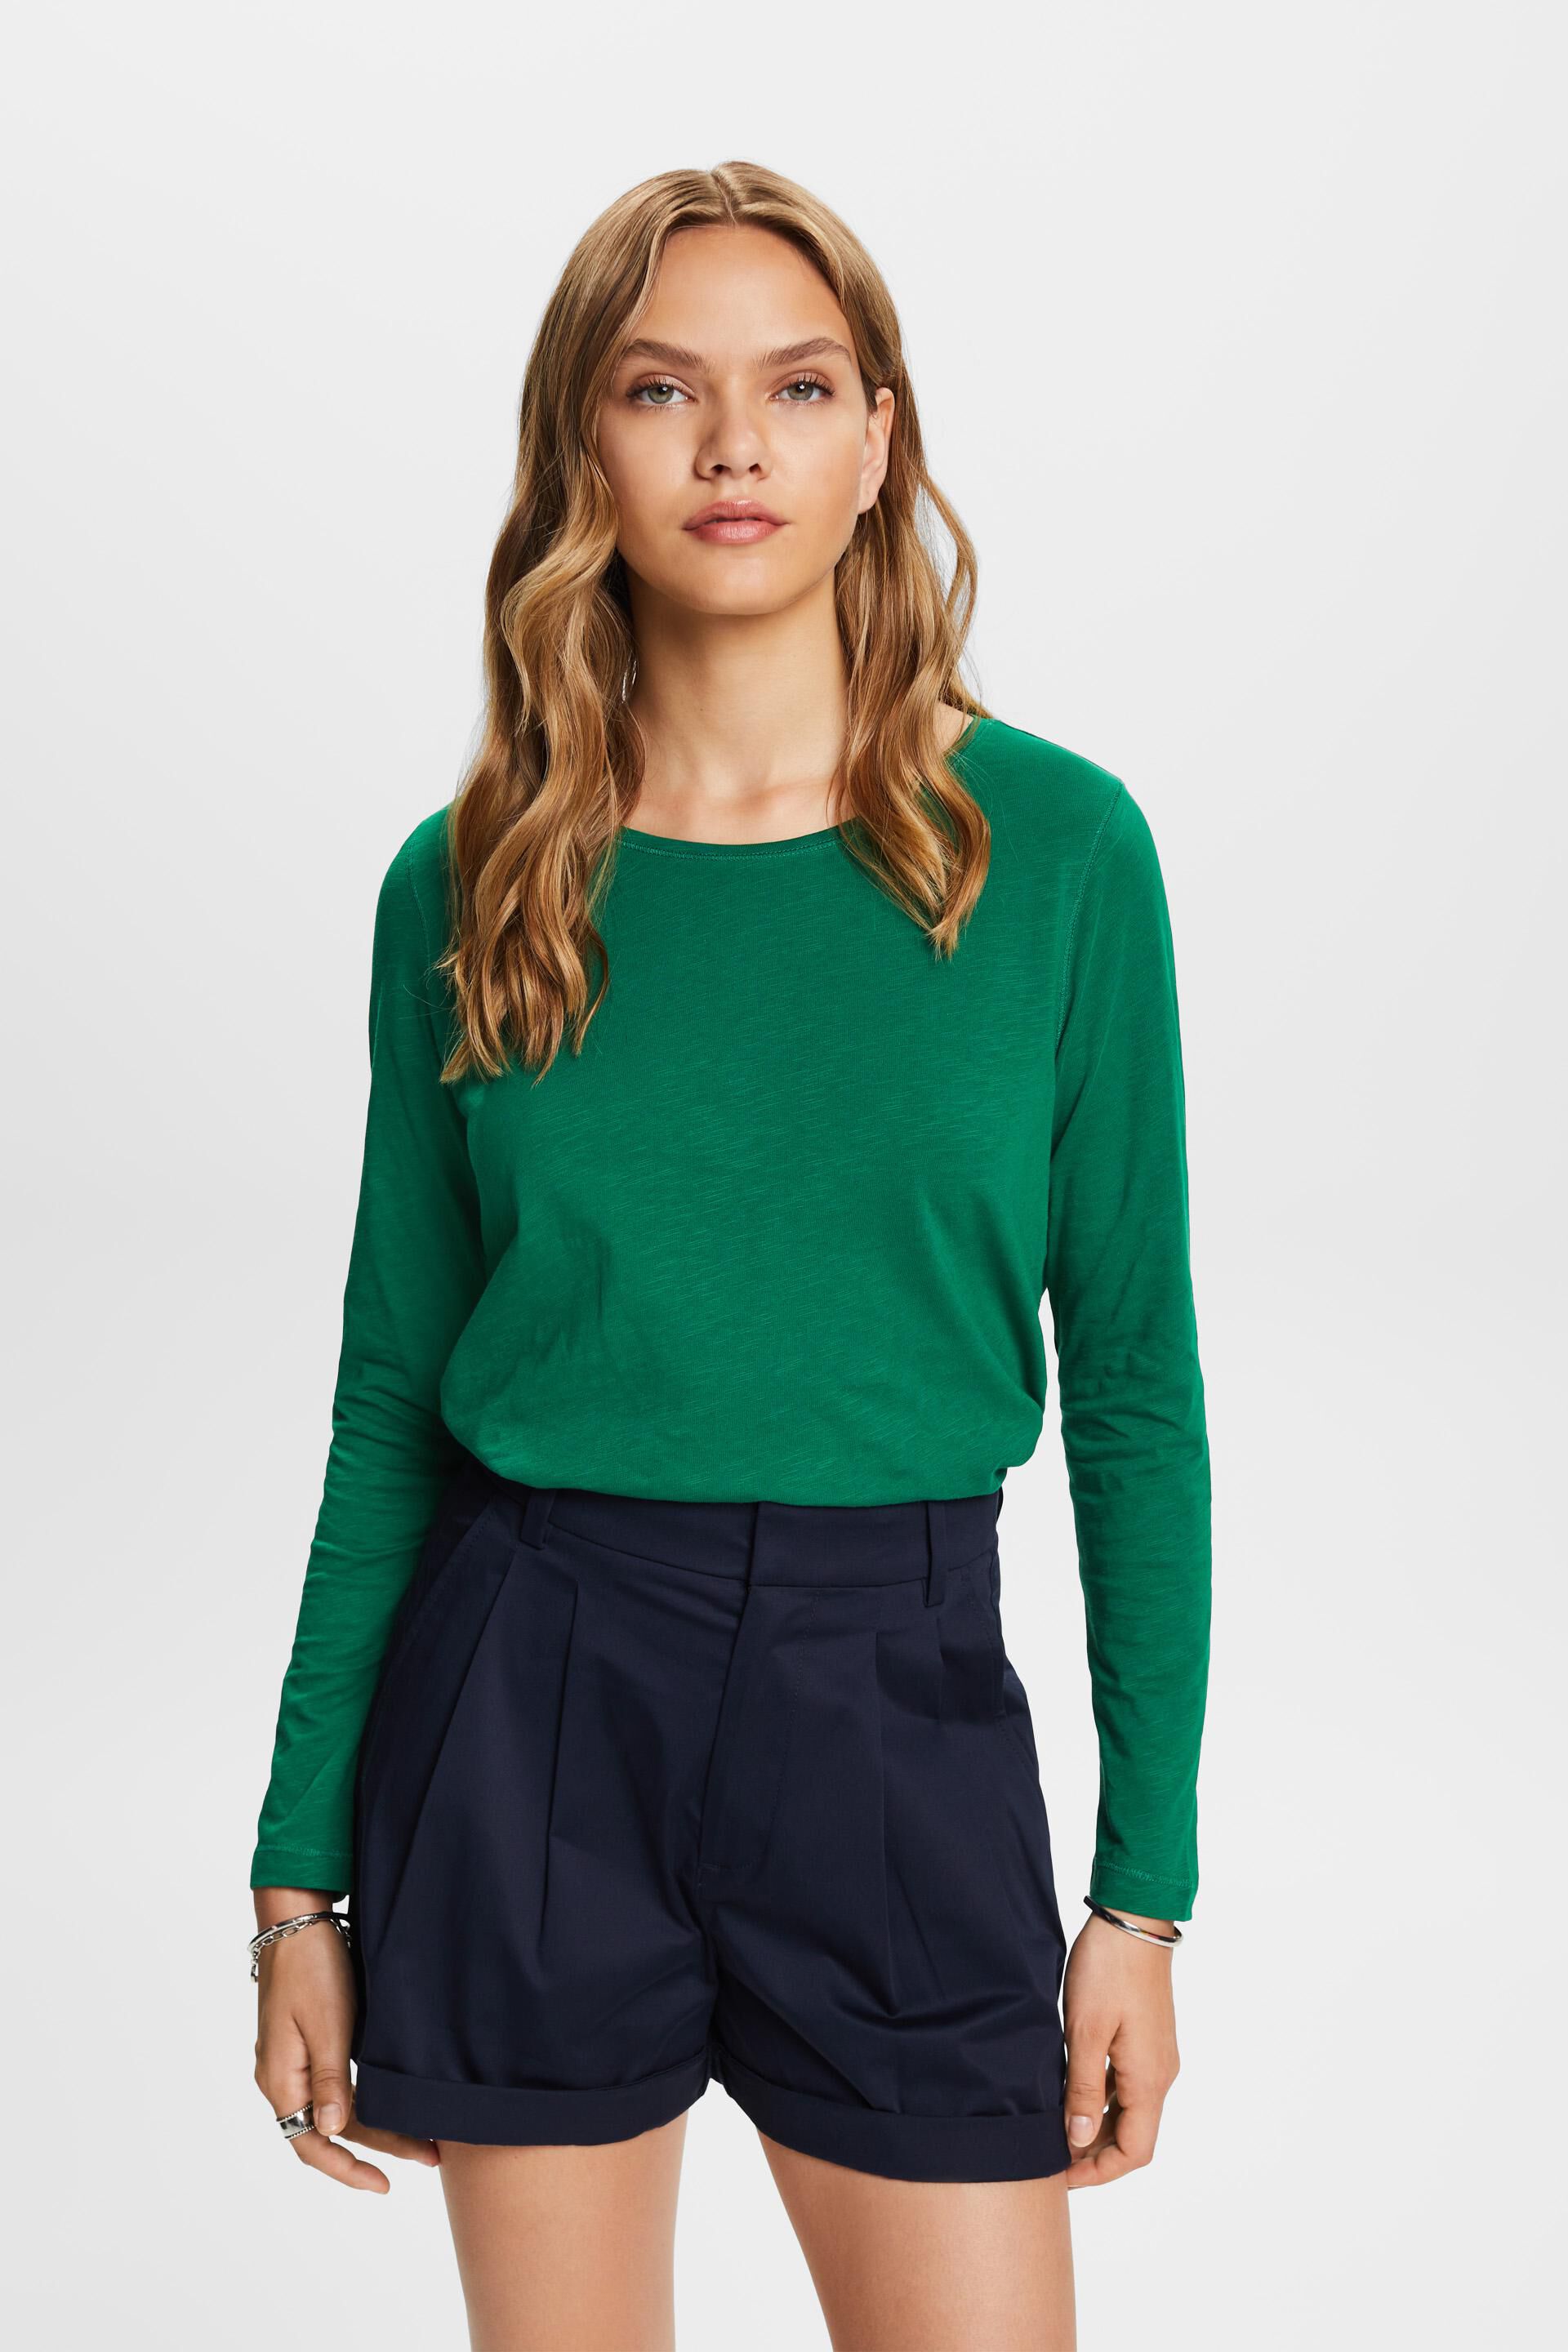 Esprit Damen Jersey long sleeve top, 100% cotton